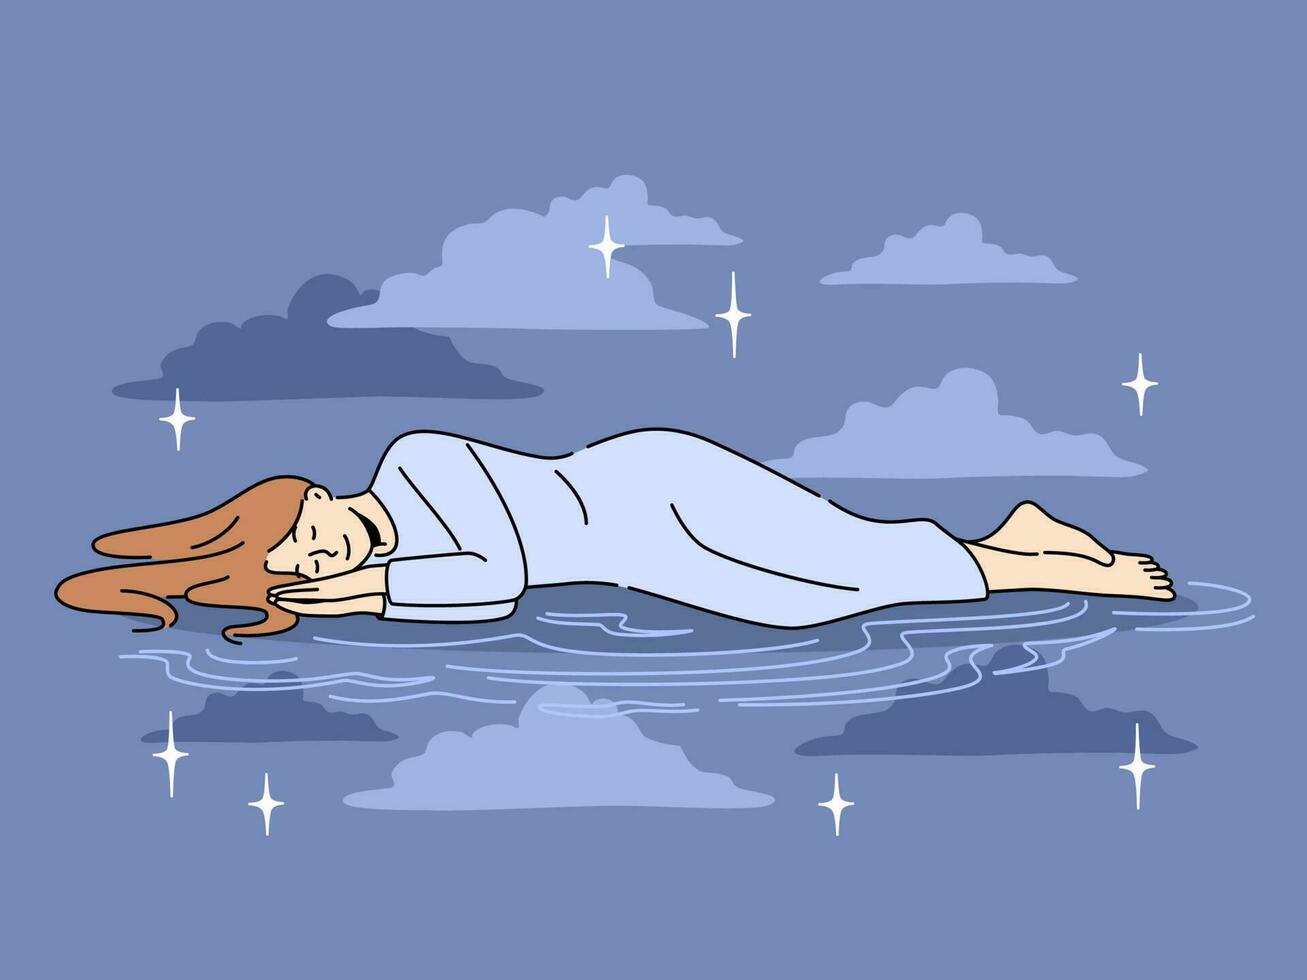 lugna kvinna liggande sovande i Plats bland stjärnor. avslappnad flicka njuter fredlig sömn i mörk natt himmel. dagdrömma och avslappning. vektor illustration.